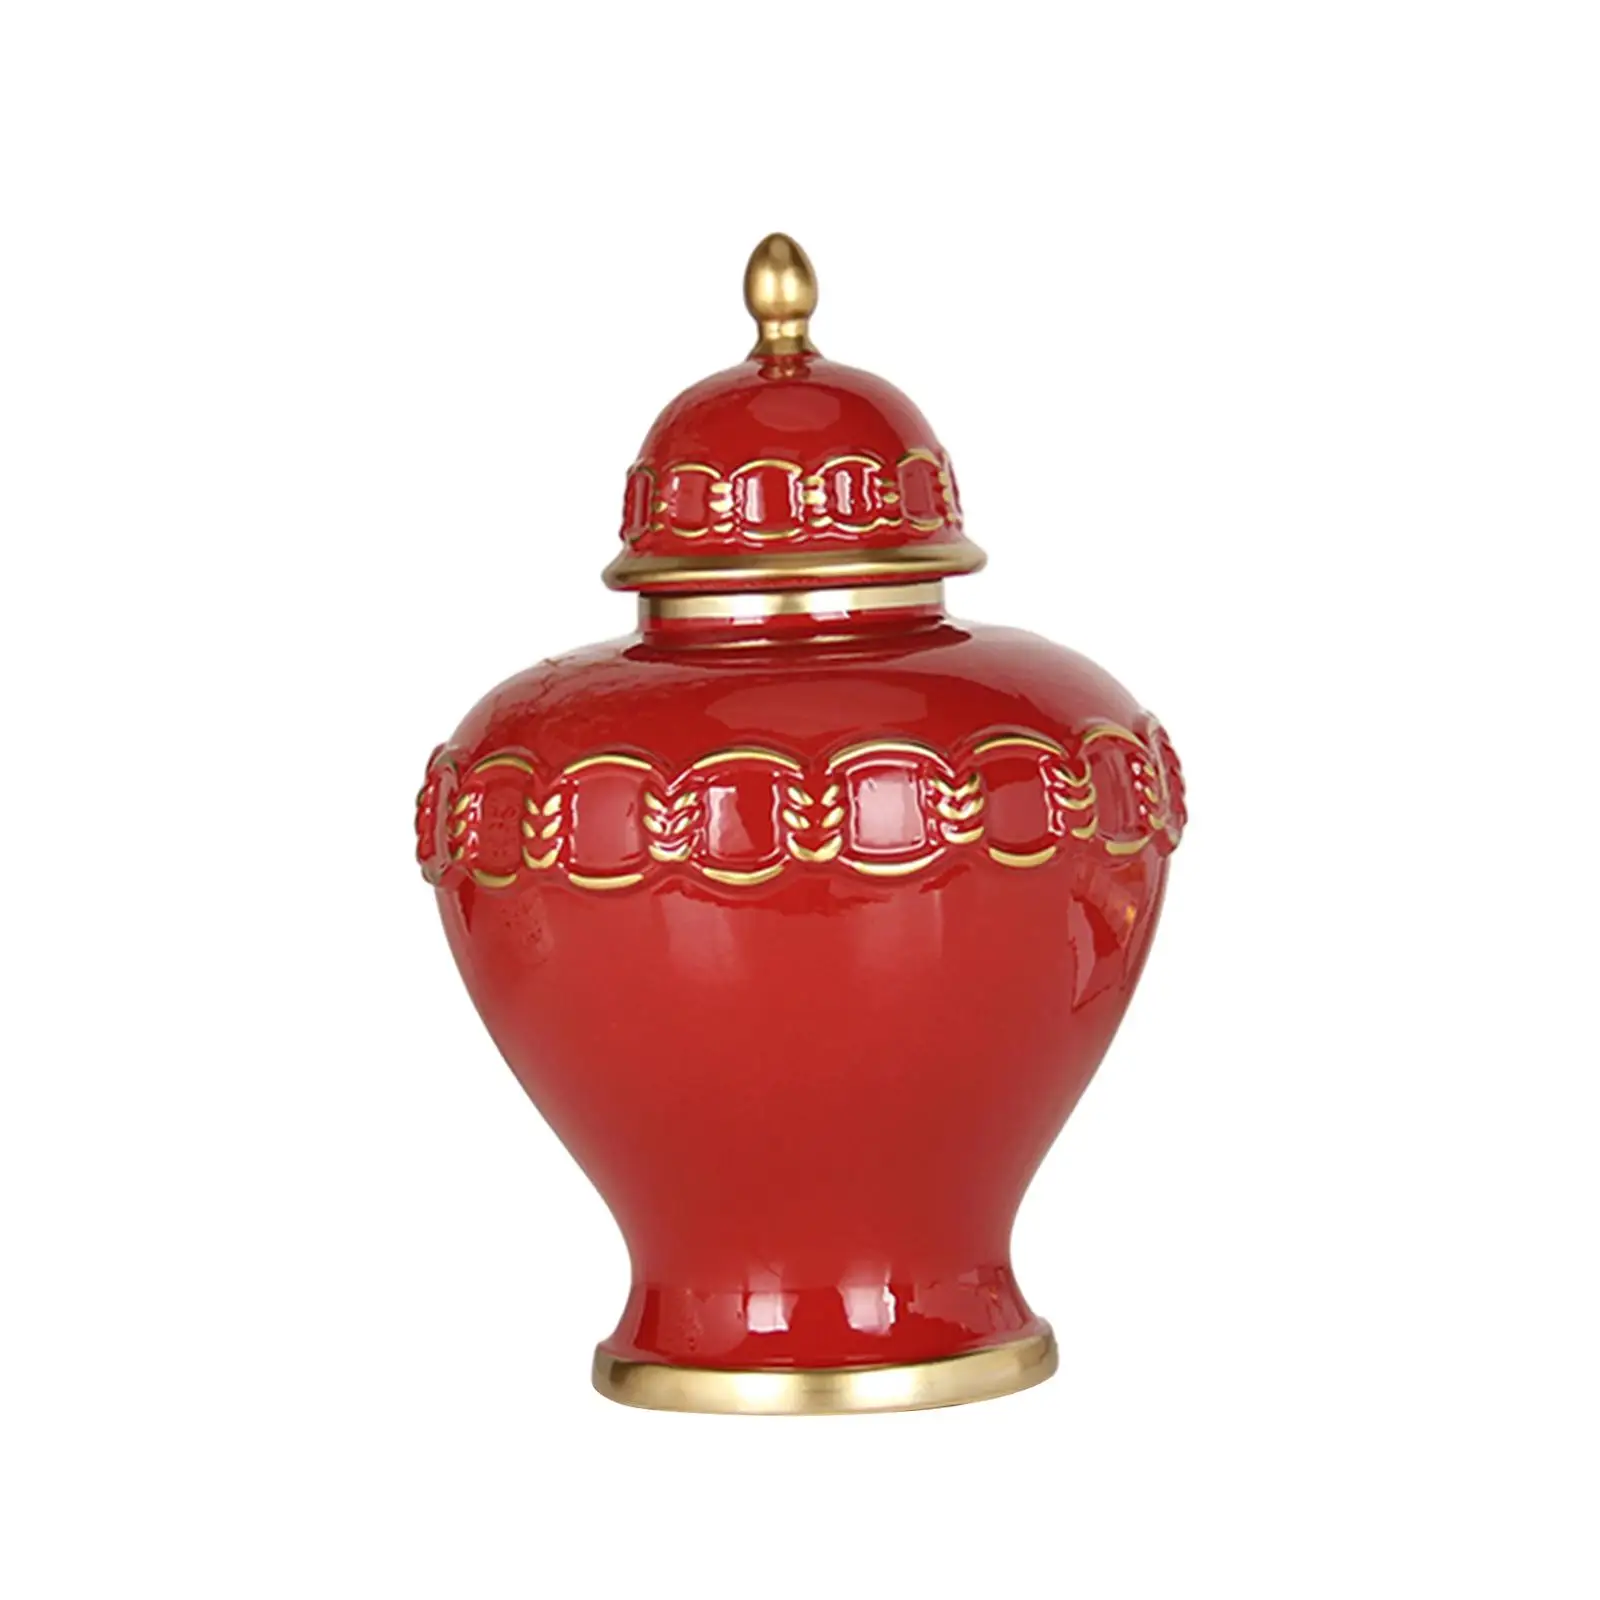 Porcelain Ginger Jar Collection with Lid Display Handicraft Ceramic Vase Temple Jar for Bedroom Weddings Shelf Office Home Decor